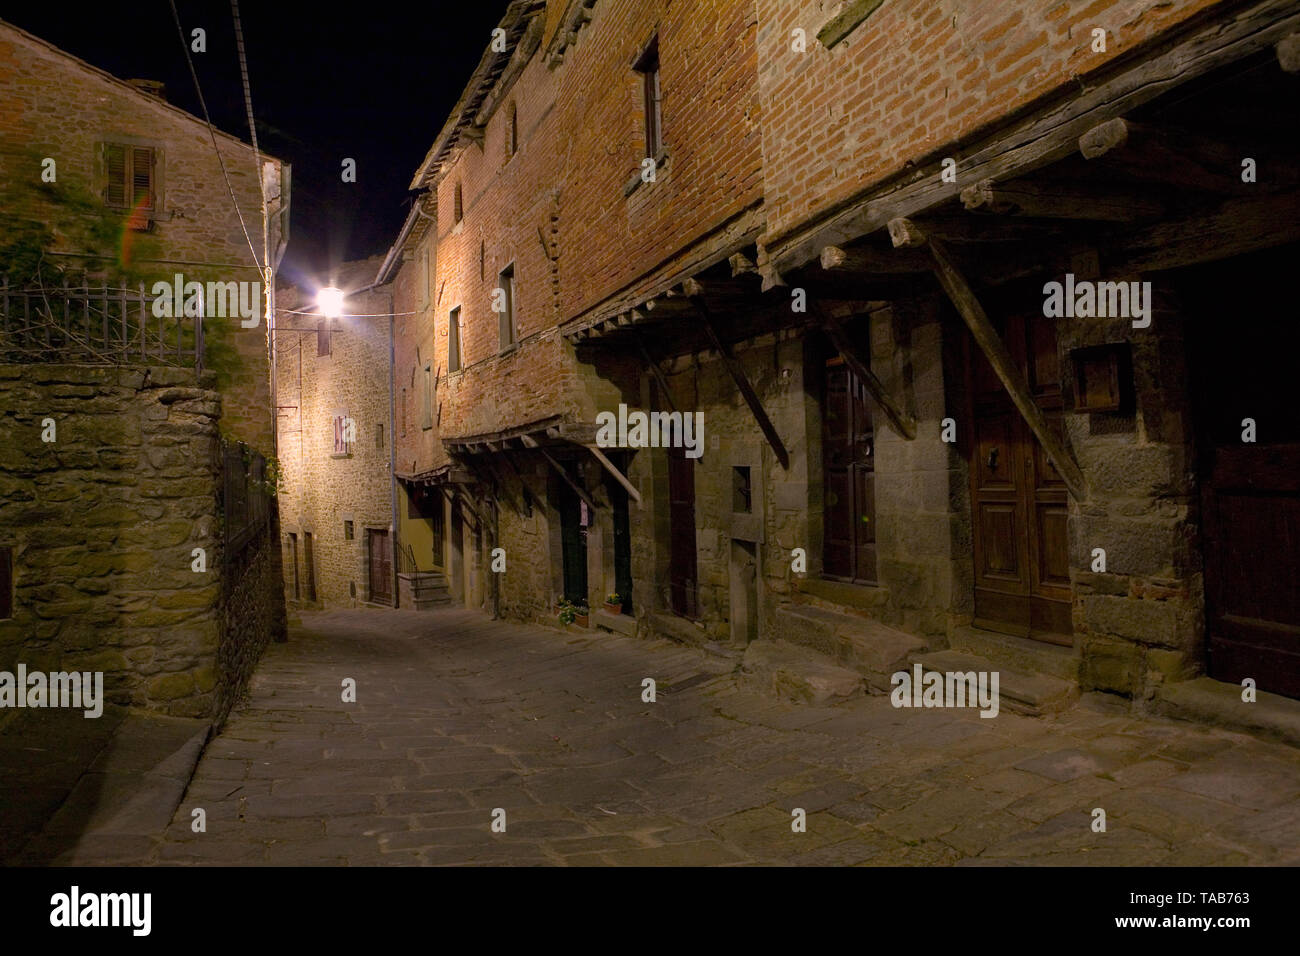 Vicolo Jannelli, Cortona, Arezzo, Italy at night: stone and brick medieval houses, the oldest in Cortona Stock Photo